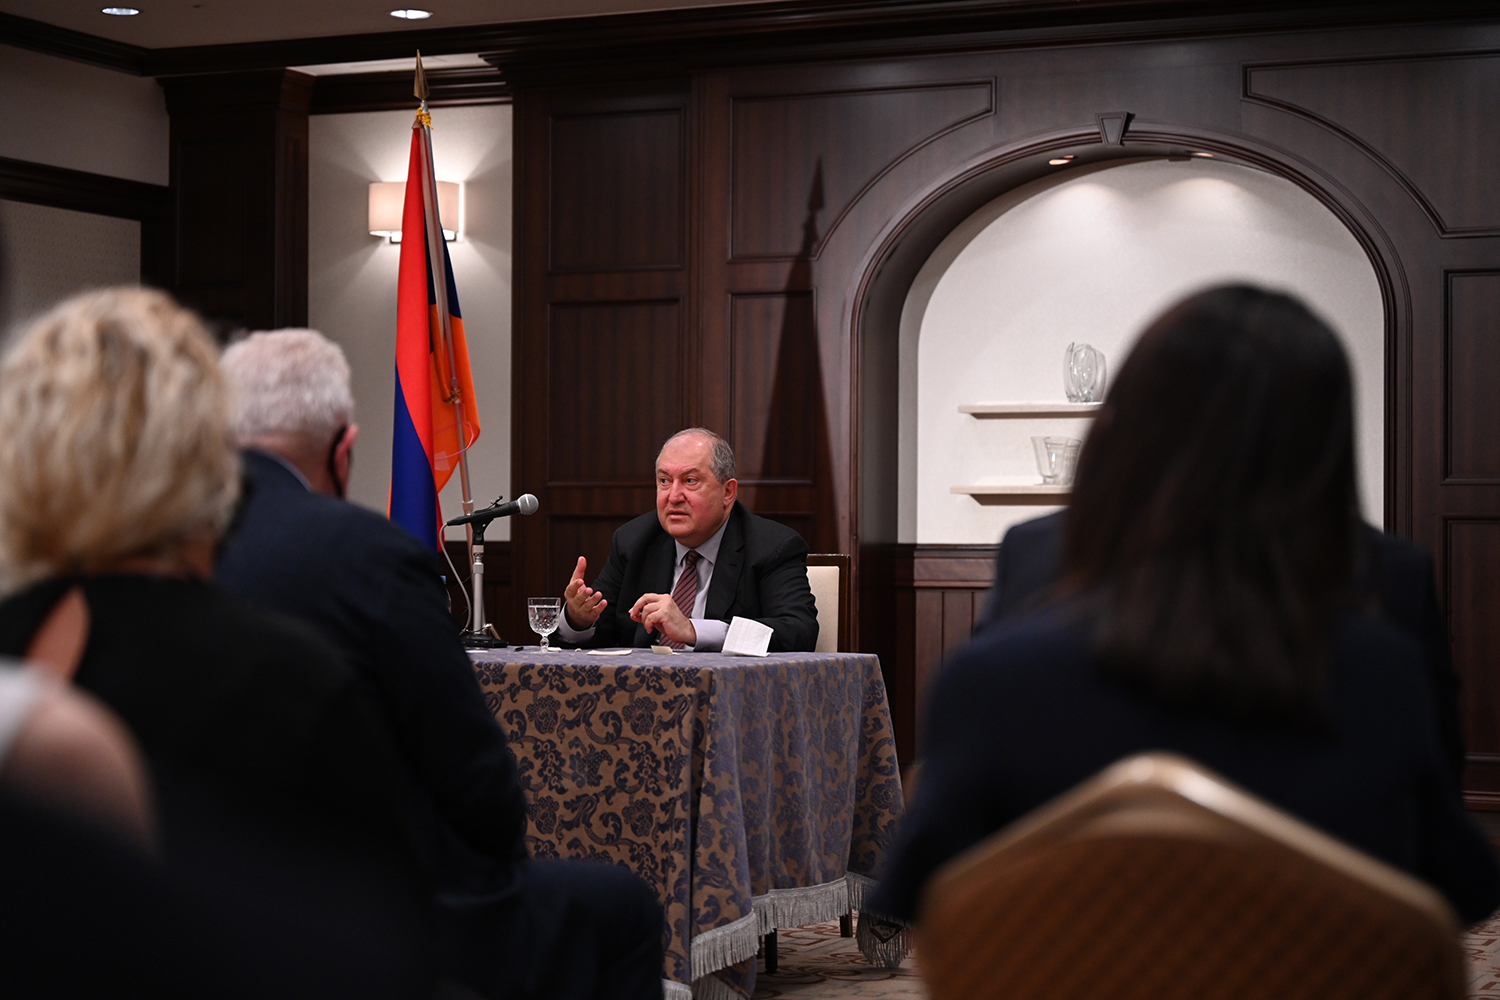 Մեր ապագան ուժեղ Հայաստան կառուցելն է. նախագահ